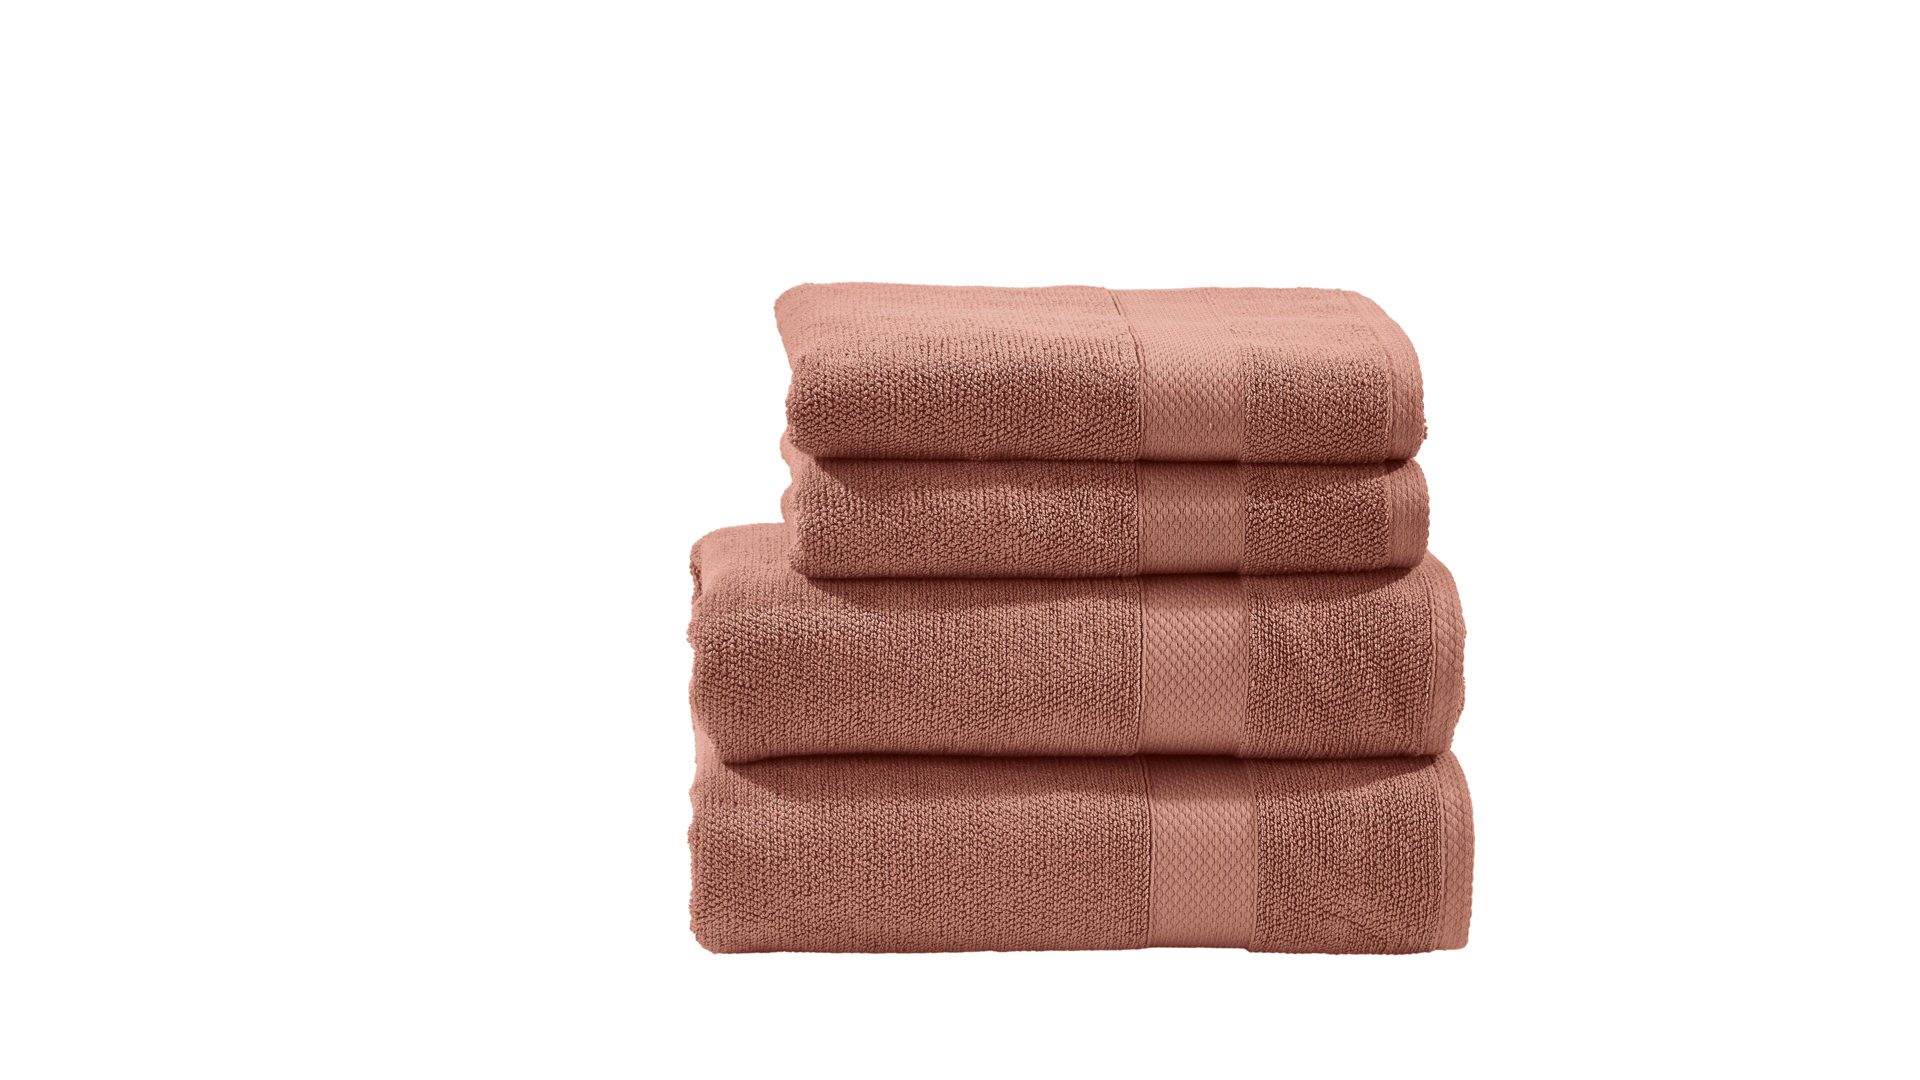 Handtuch-Set Done.® be different aus Stoff in Orange DONE.® Handtuch-Set Deluxe - Heimtextilien wüstensandfarbene Baumwolle – vierteilig